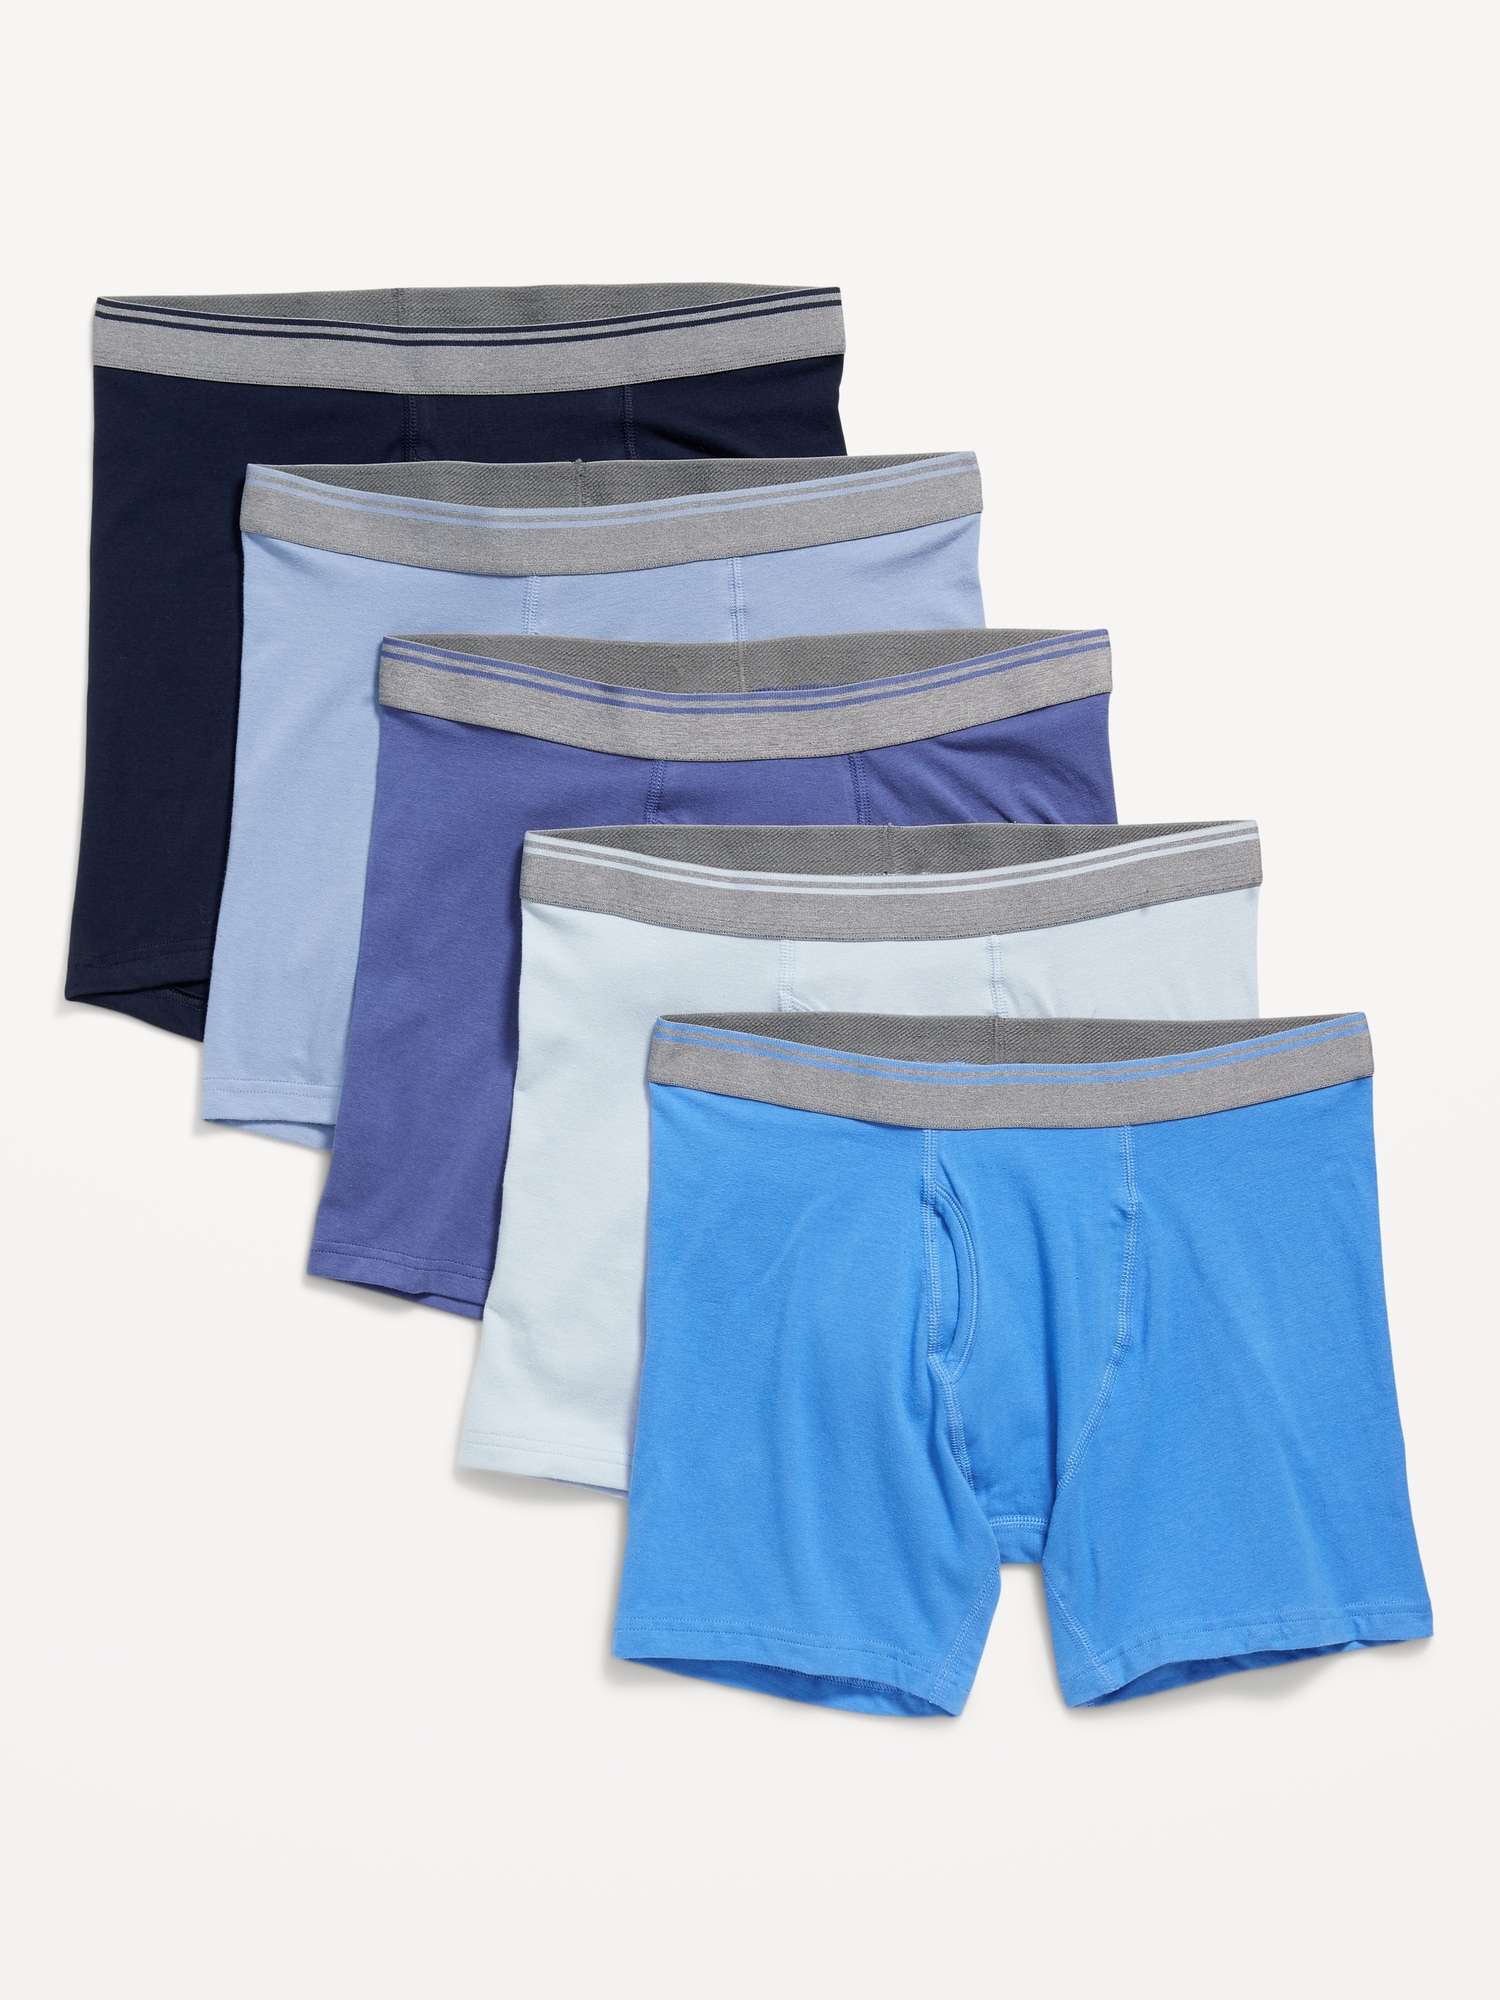 Soft-Washed Built-In Flex Boxer-Brief Underwear 5-Pack -- 6.25-inch inseam